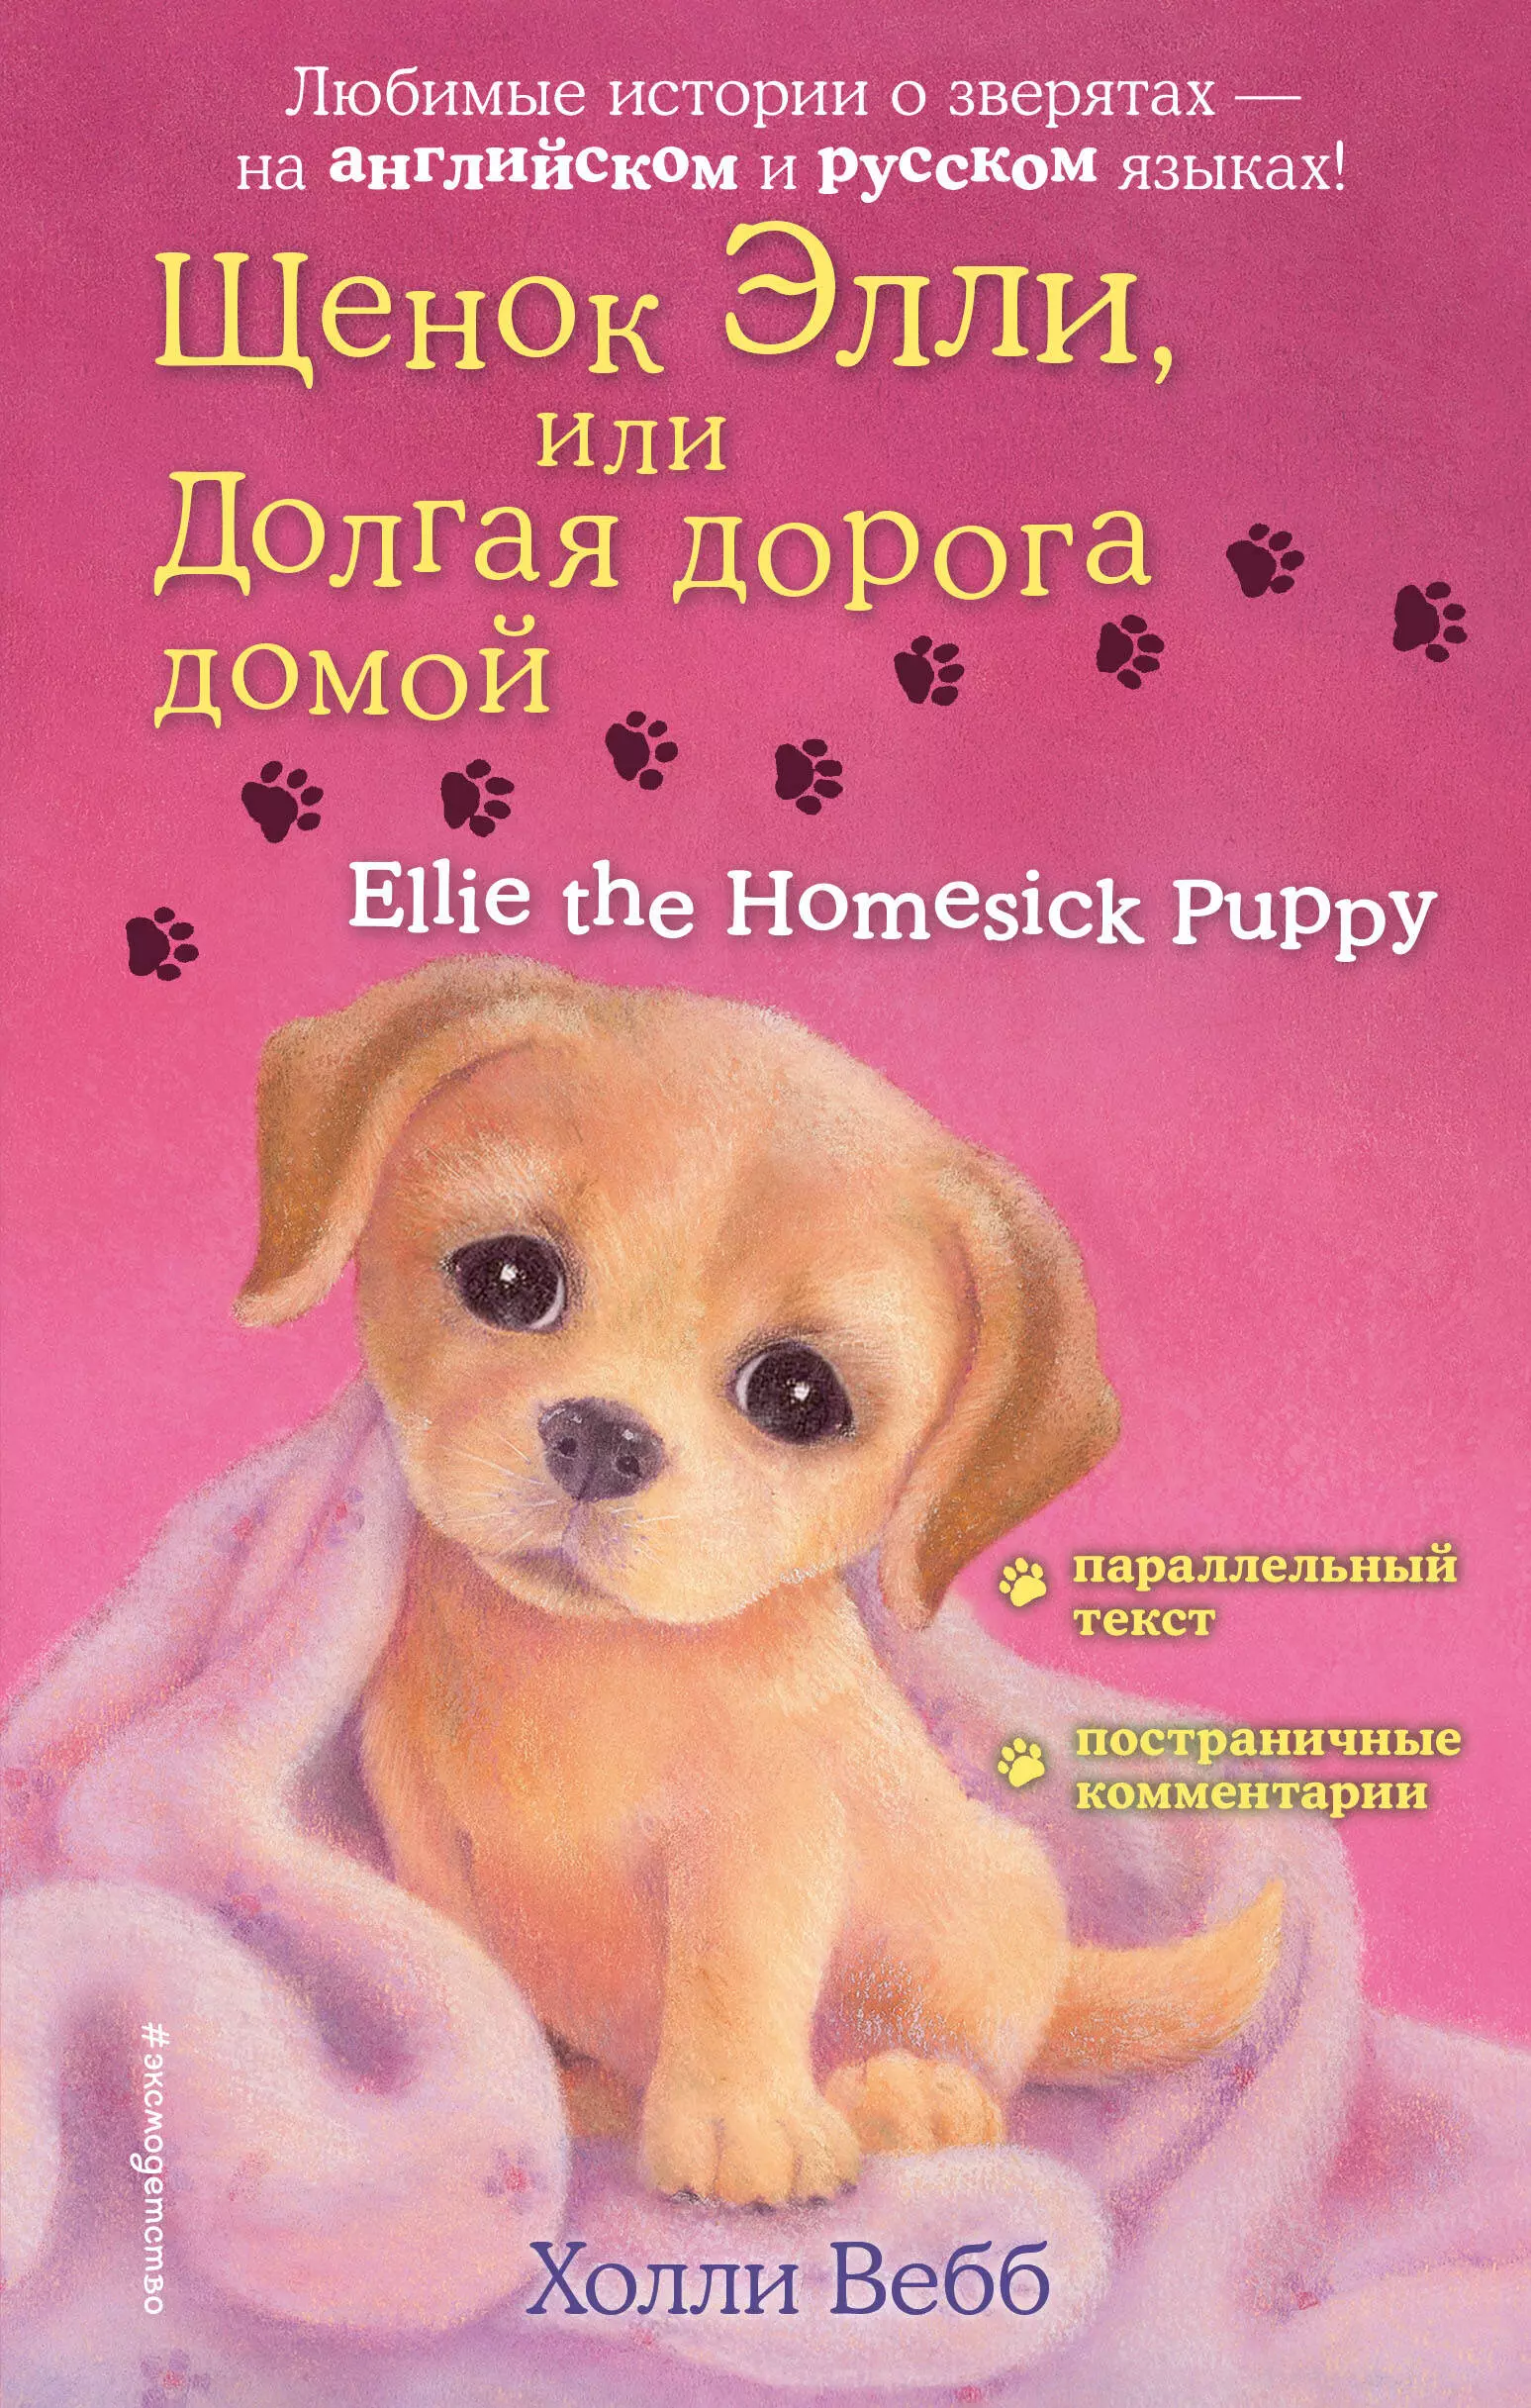 Щенок Элли, или Долгая дорога домой = Ellie the Homesick Puppy щенок элли или долгая дорога домой выпуск 5 вебб х